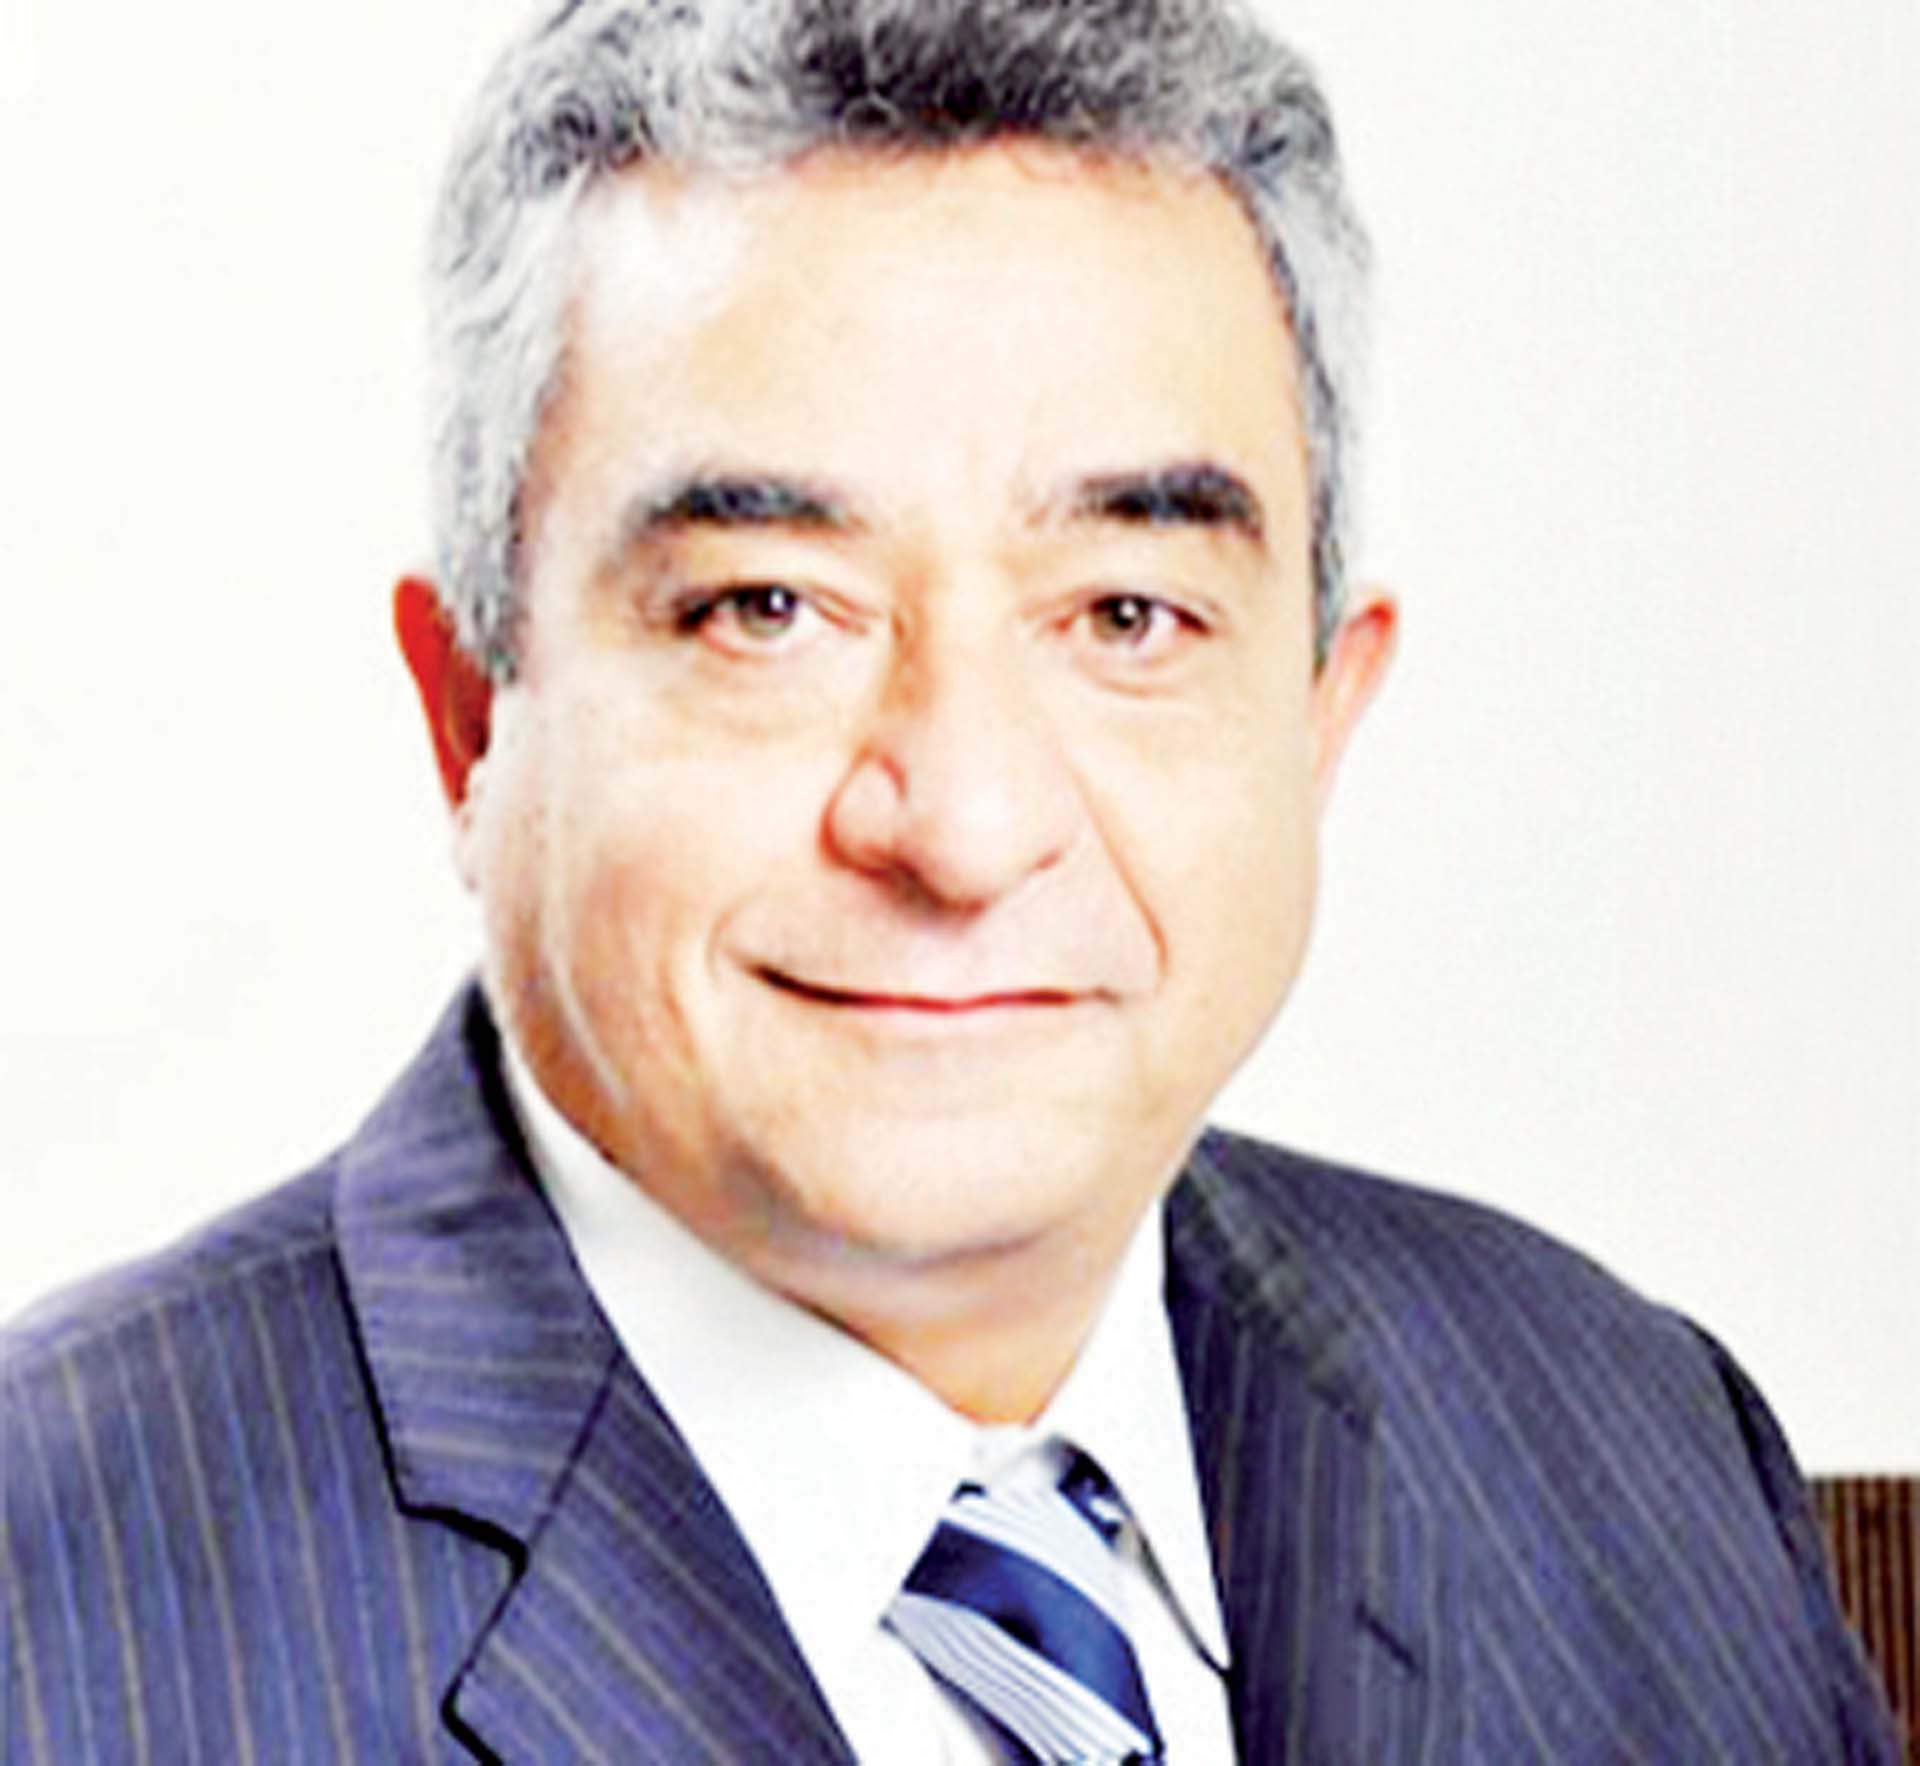 مرو خضر، رئيس شعبة تجار الورق وأصحاب المطابع بالغرفة التجارية بالقاهرة